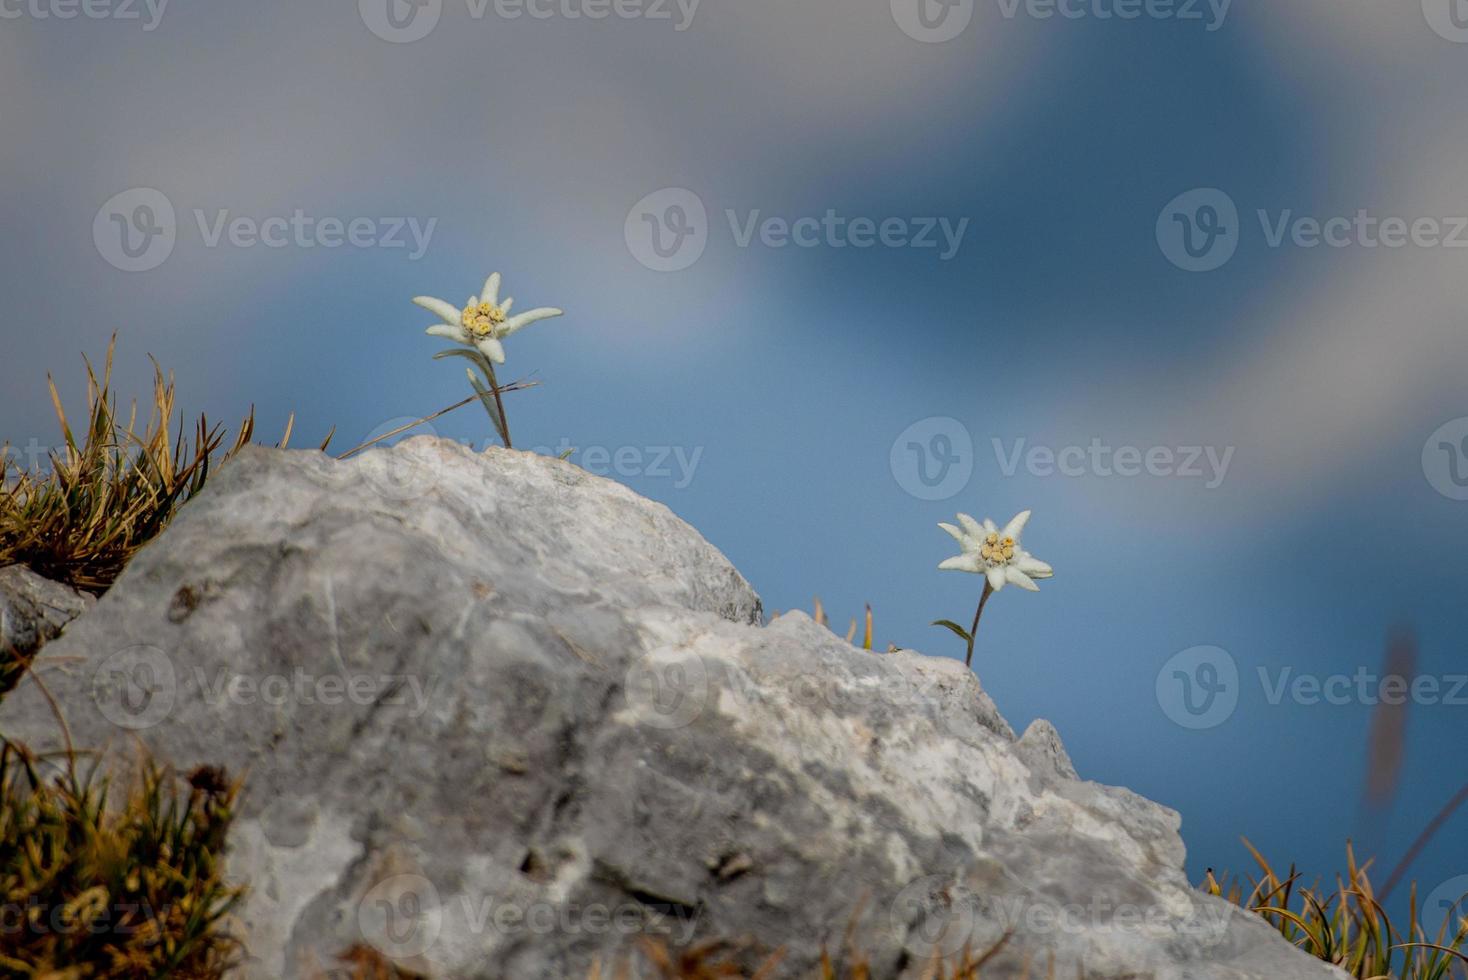 edelweiss florescendo nas altas montanhas foto